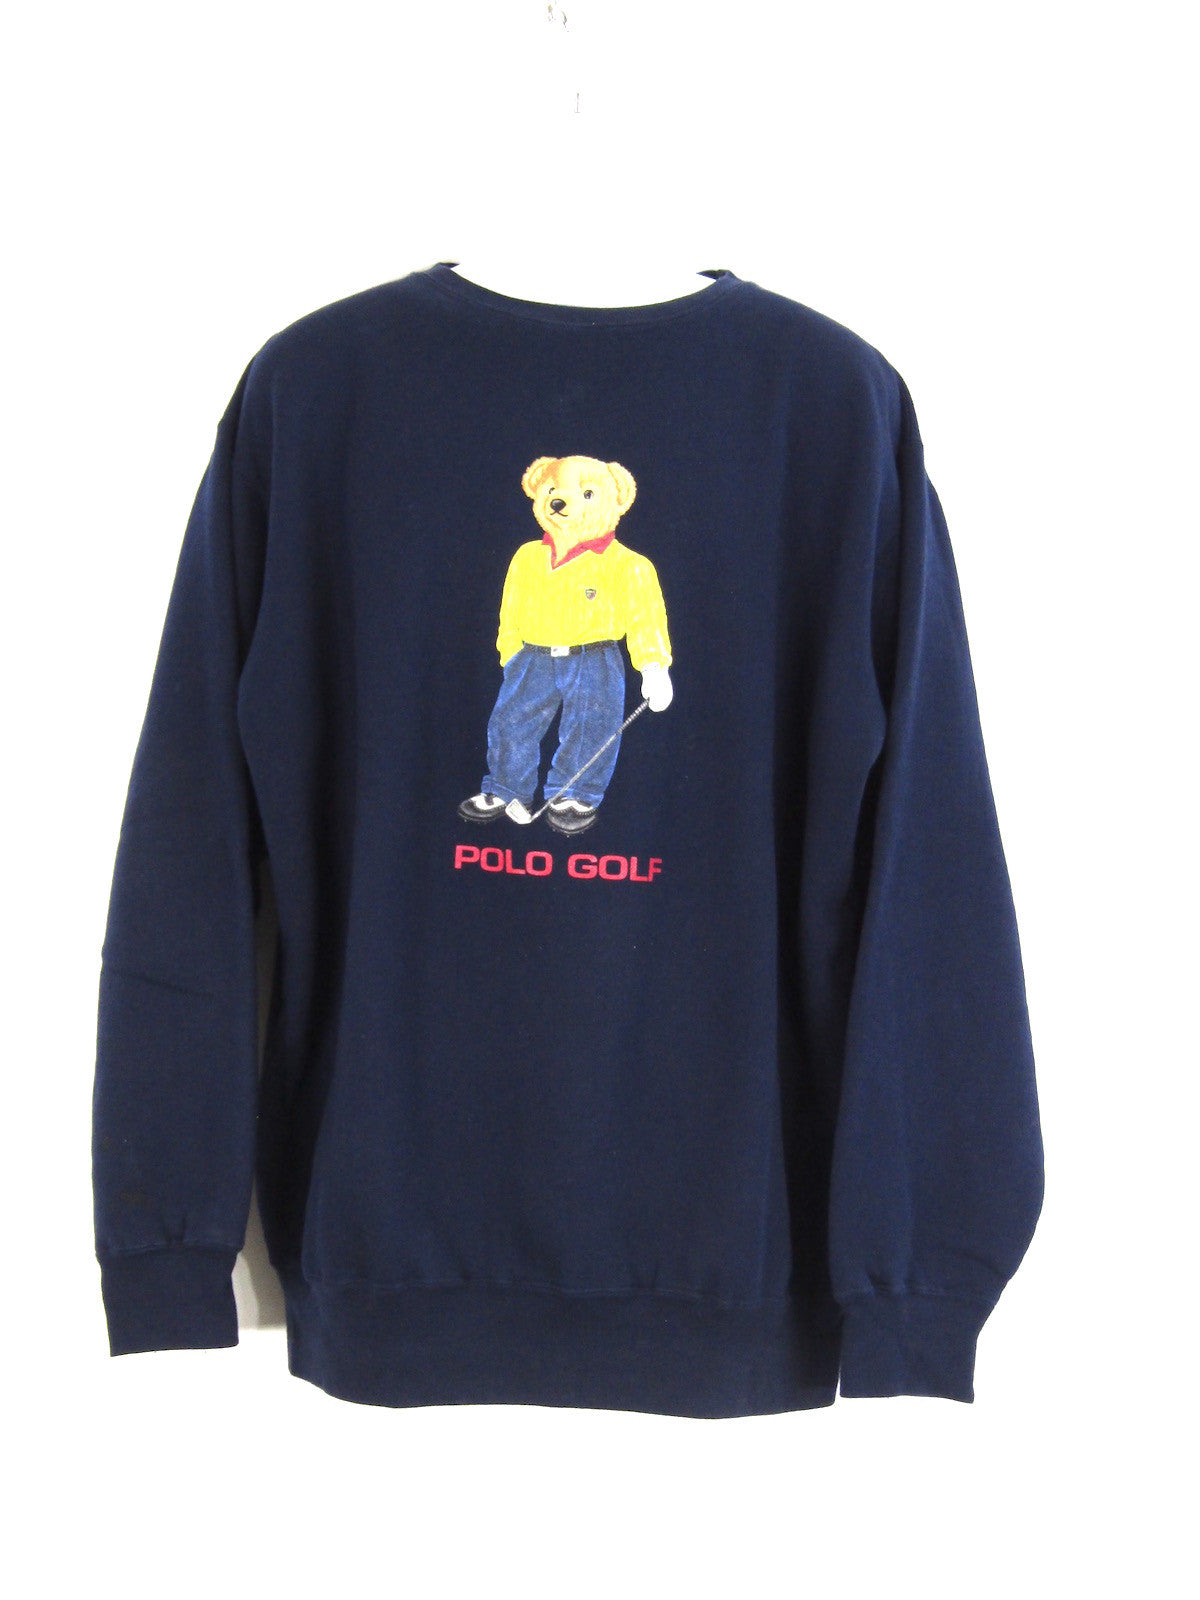 polo teddy bear sweaters